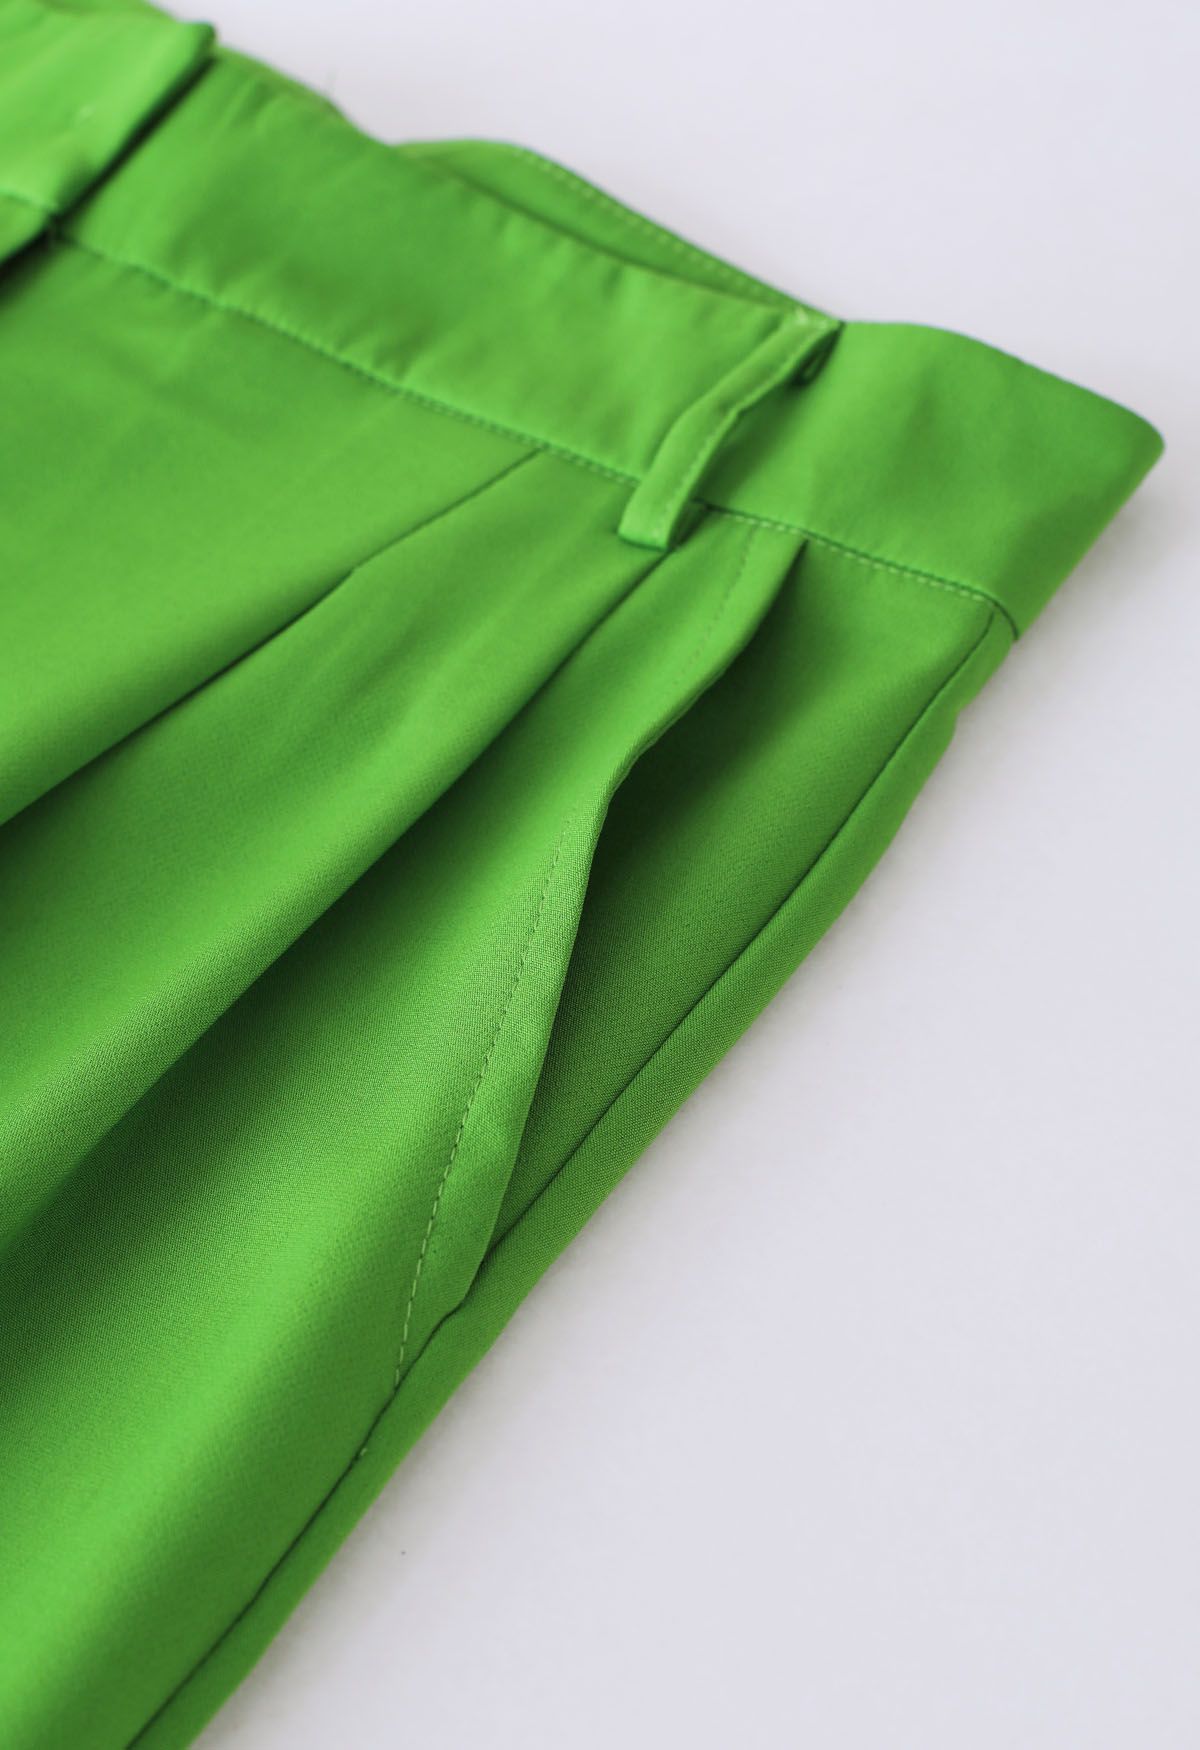 Grasgrüne Hose mit geradem Bein und Faltendetail